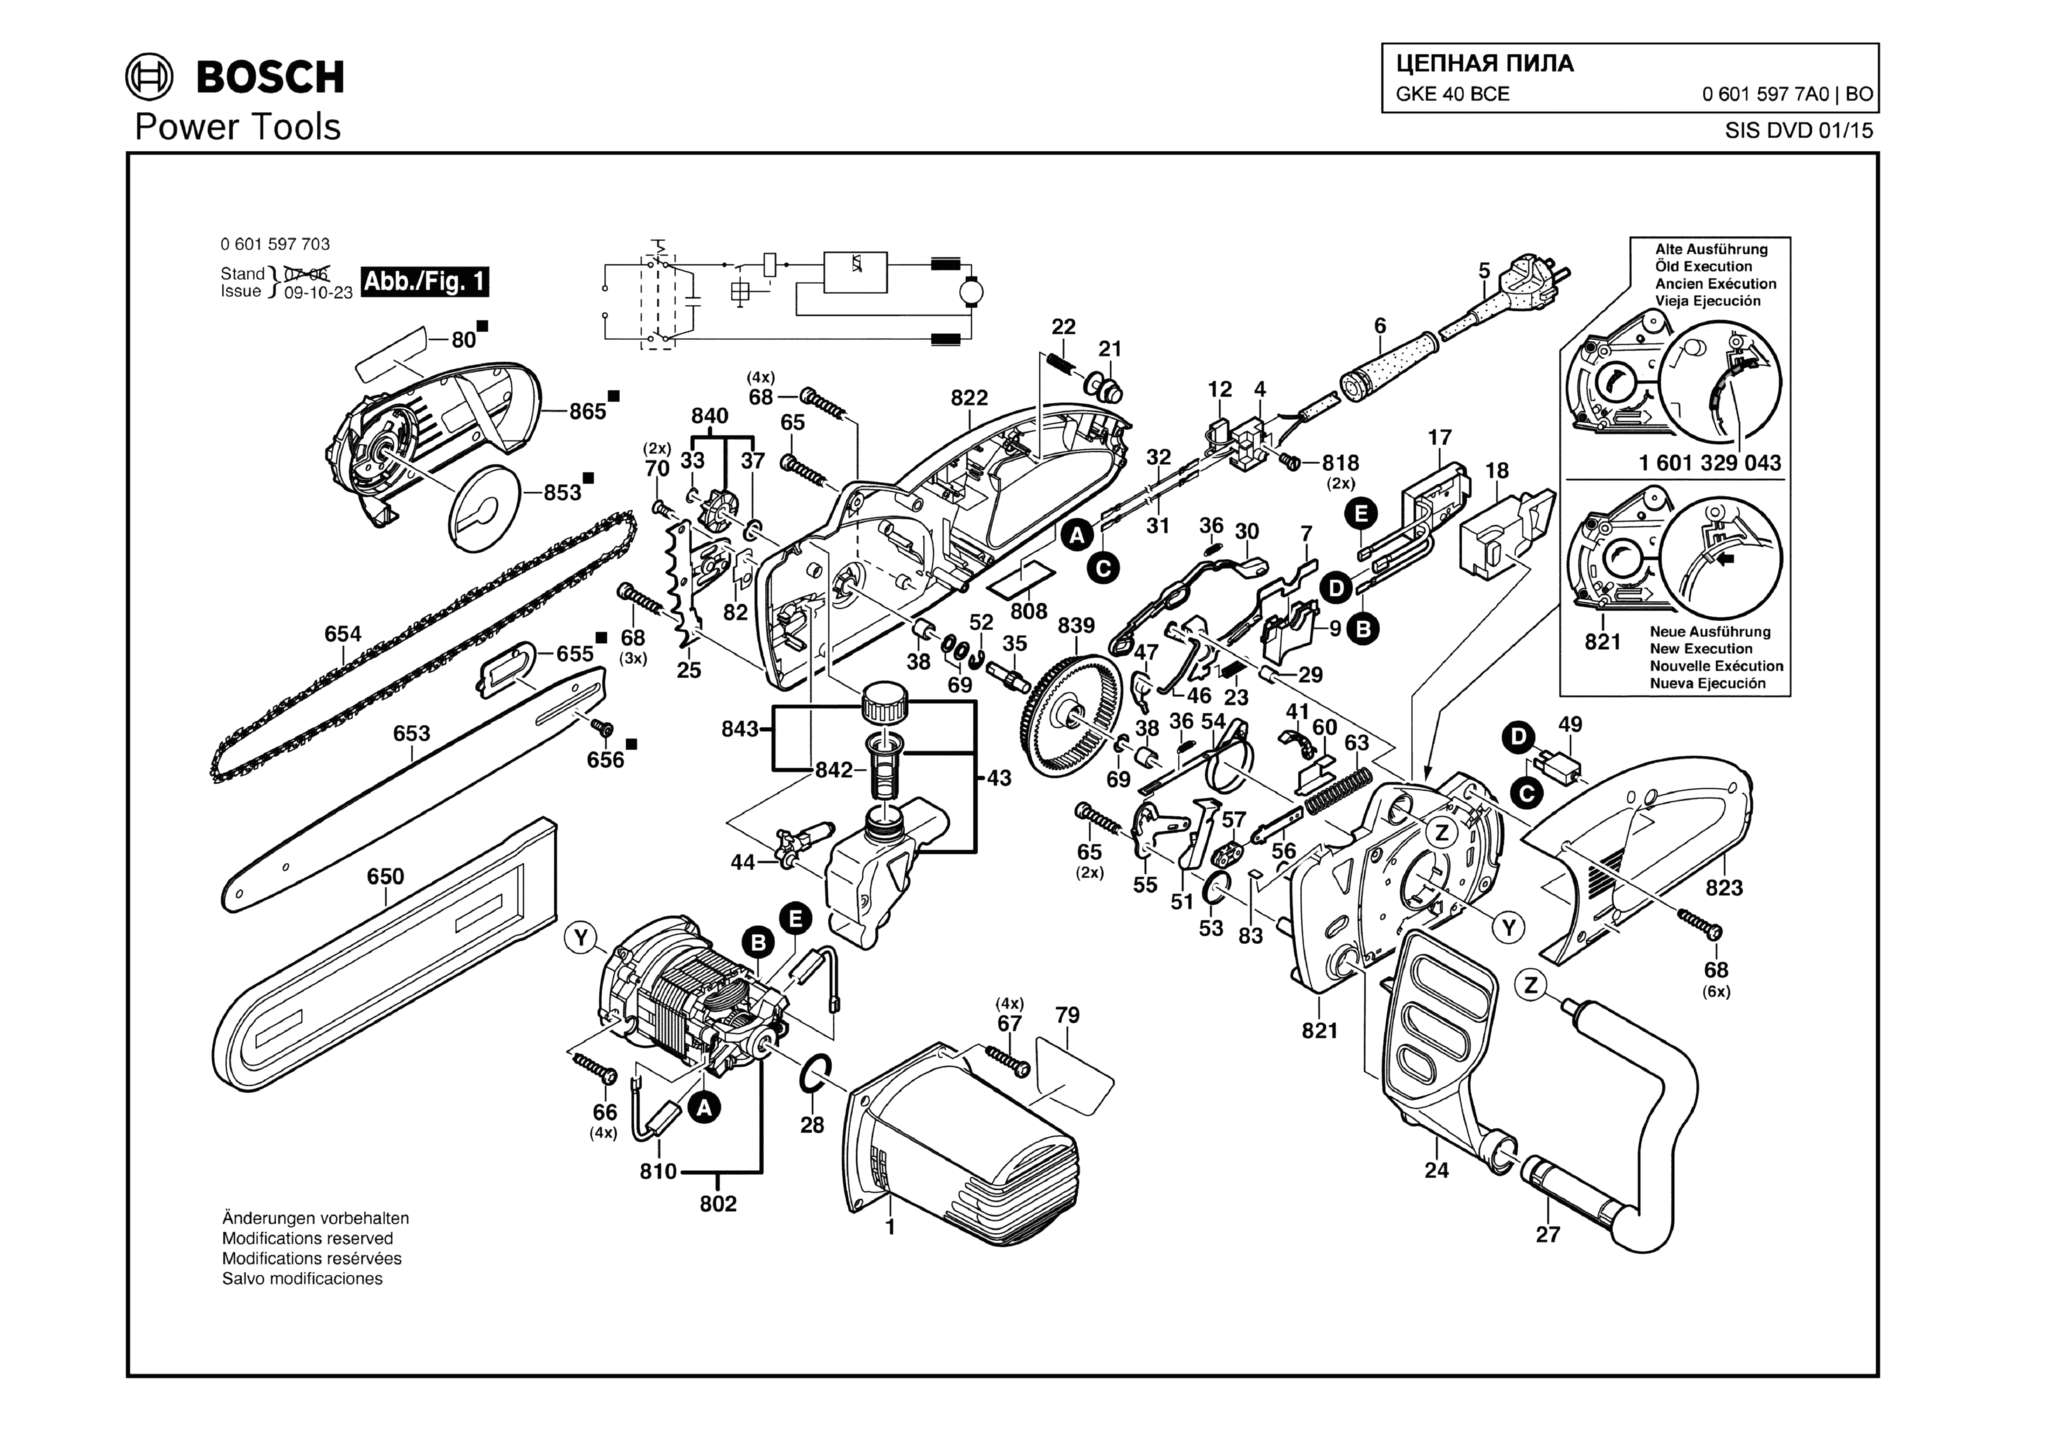 Запчасти, схема и деталировка Bosch GKE 40 BCE (ТИП 06015977A0)